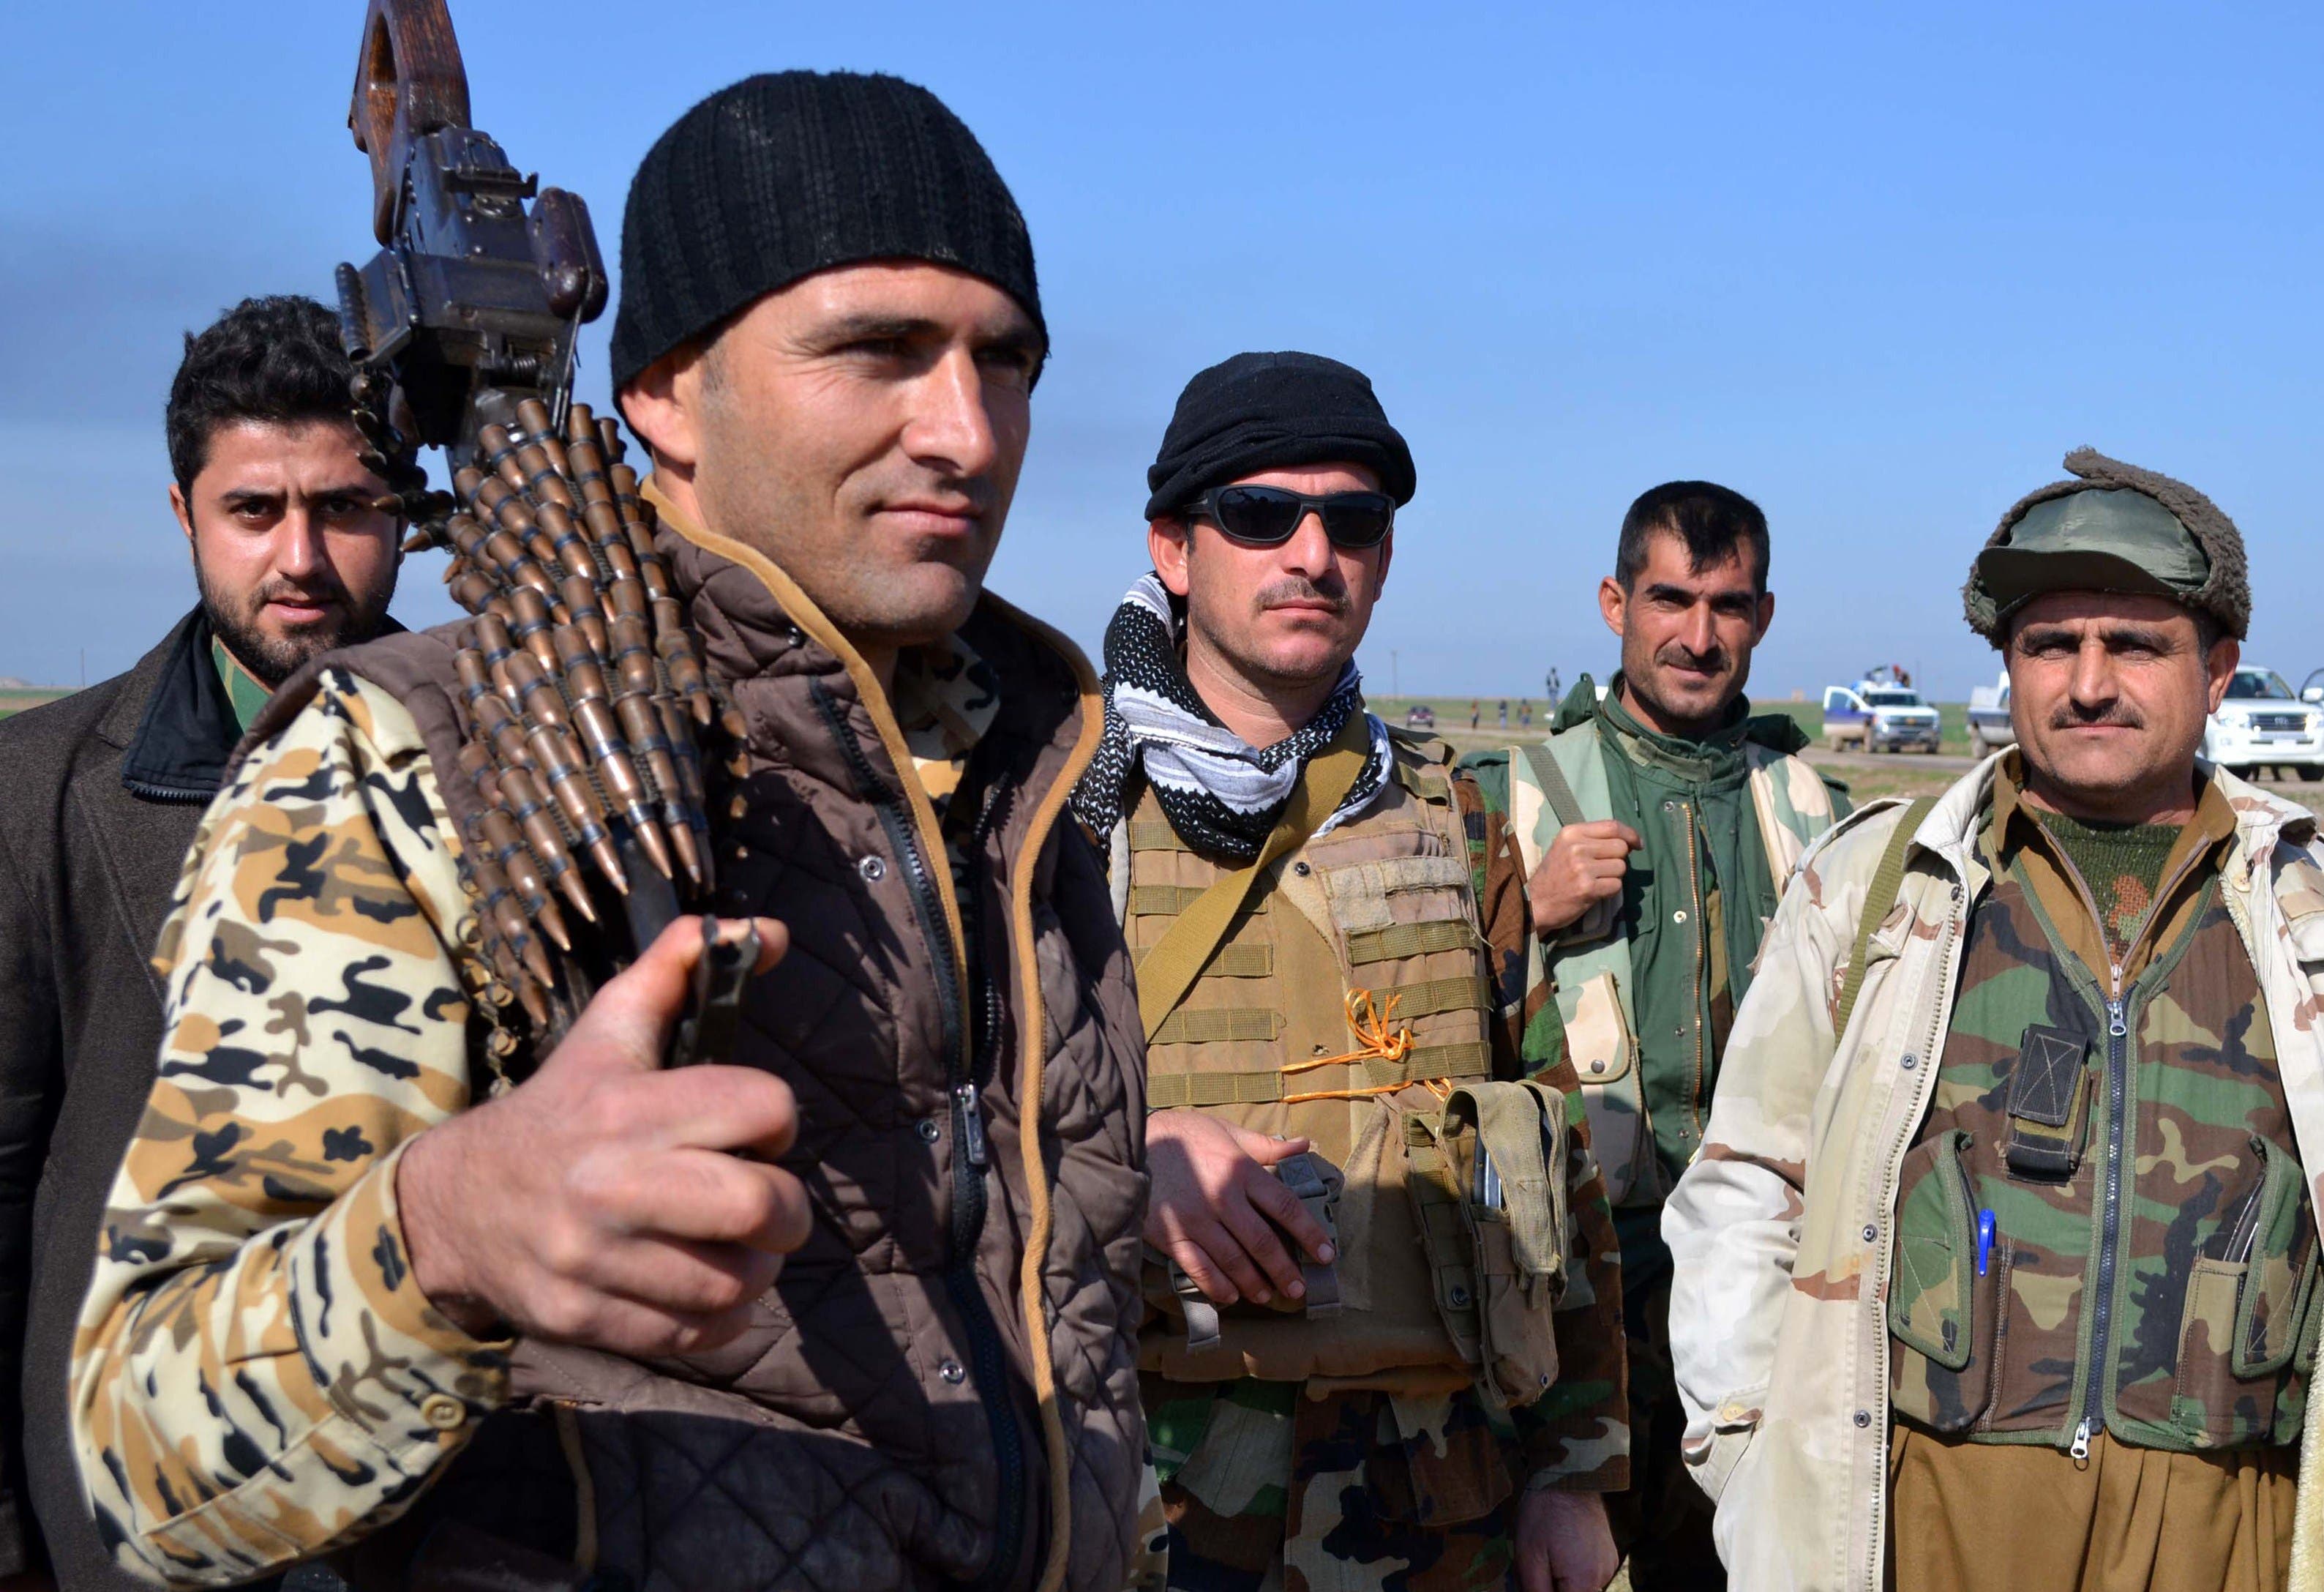 Peshmerga retake oil field from ISIS